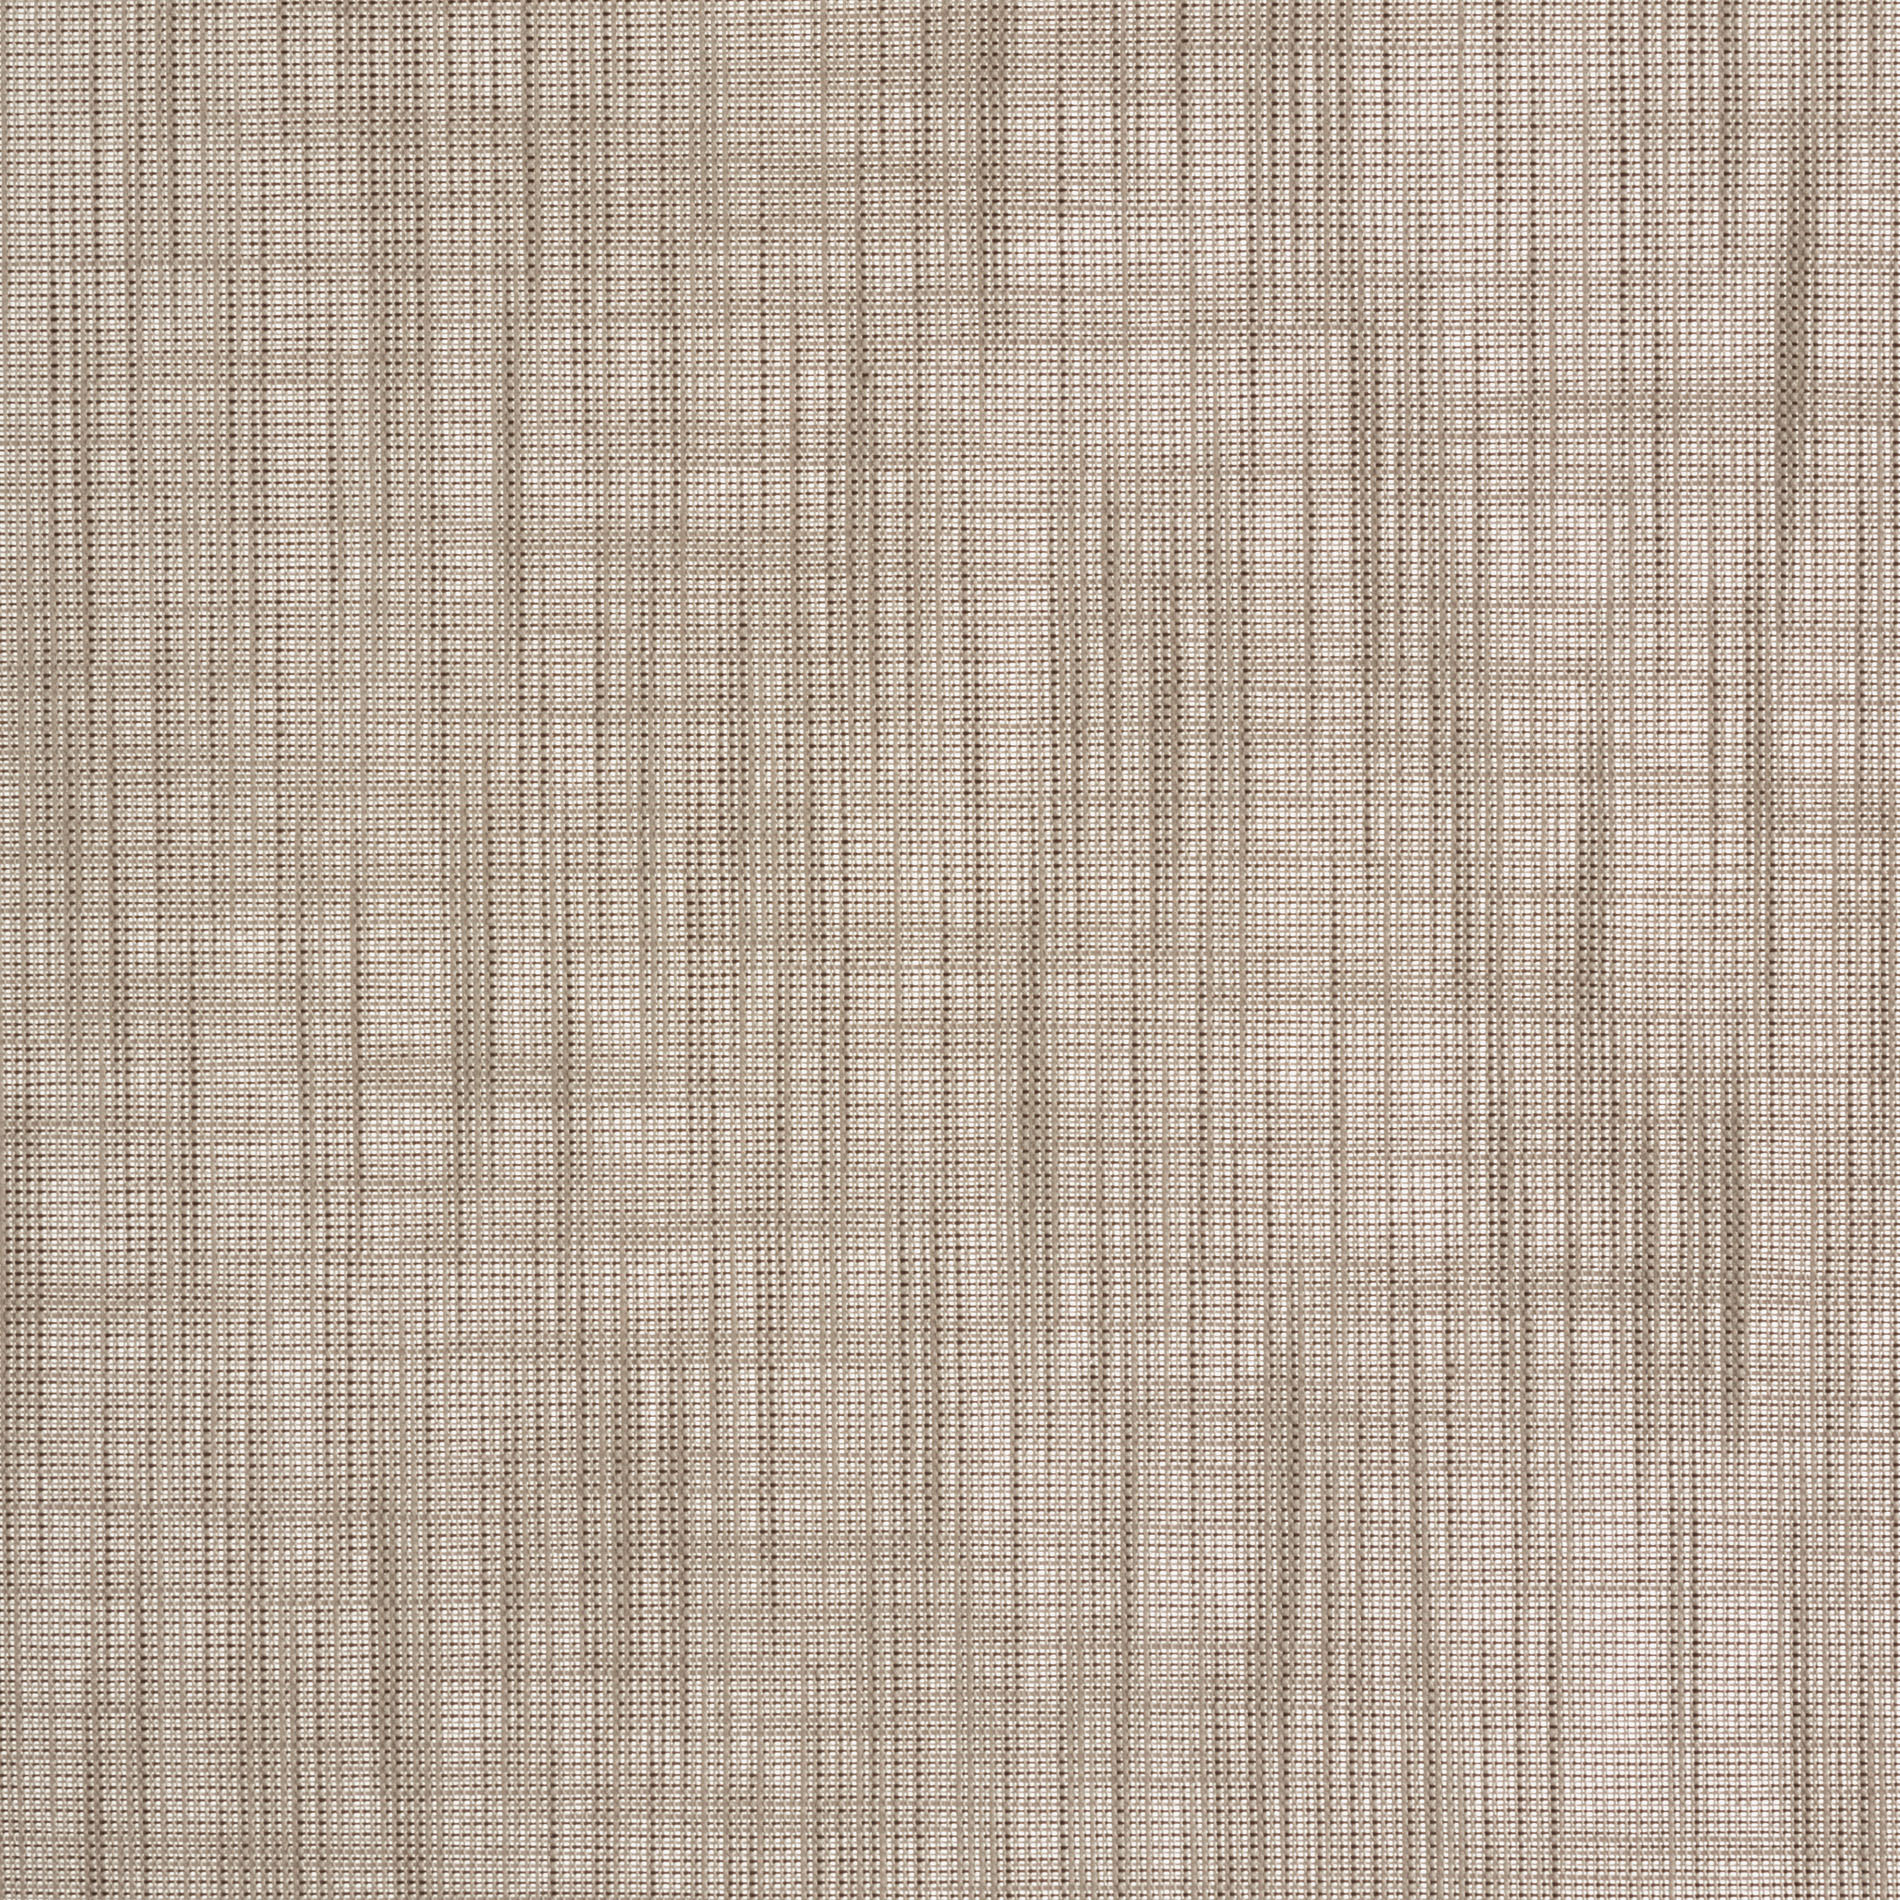 Altex - Fabric - CACHET TRANSPARENT - Autumn Fog - 1617